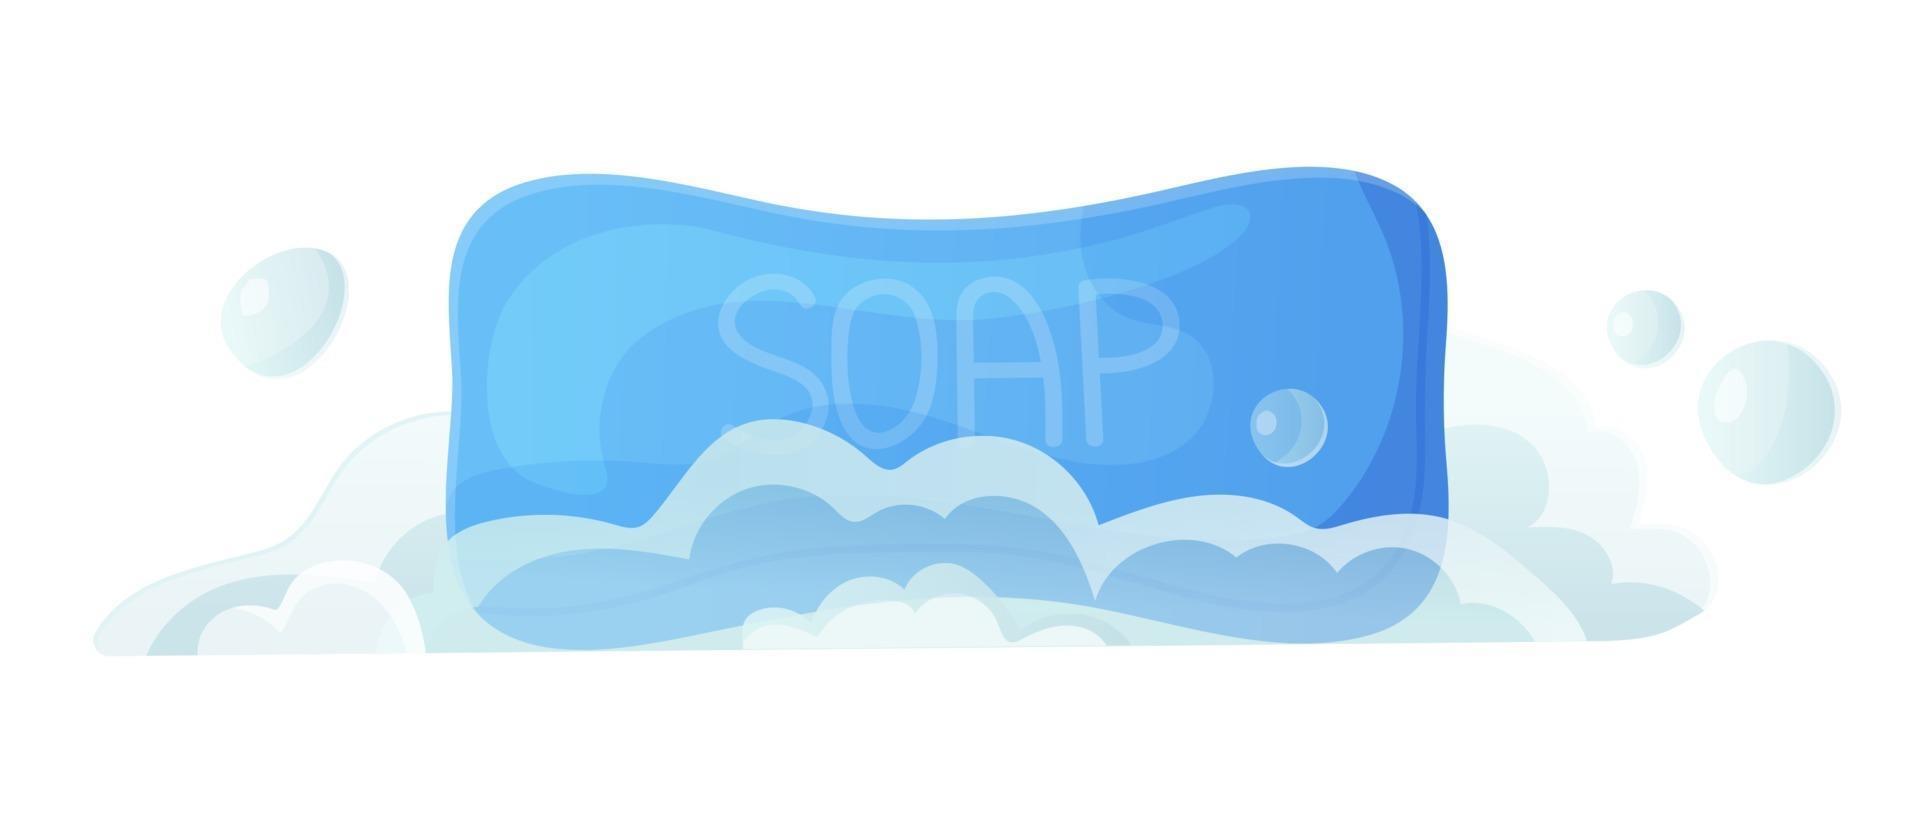 jabón sólido azul con burbujas y espuma higiene limpia fresca cuidado de la piel lavado de manos cosmético accesorios de baño concepto stock vector ilustración en estilo de dibujos animados plano aislado en blanco